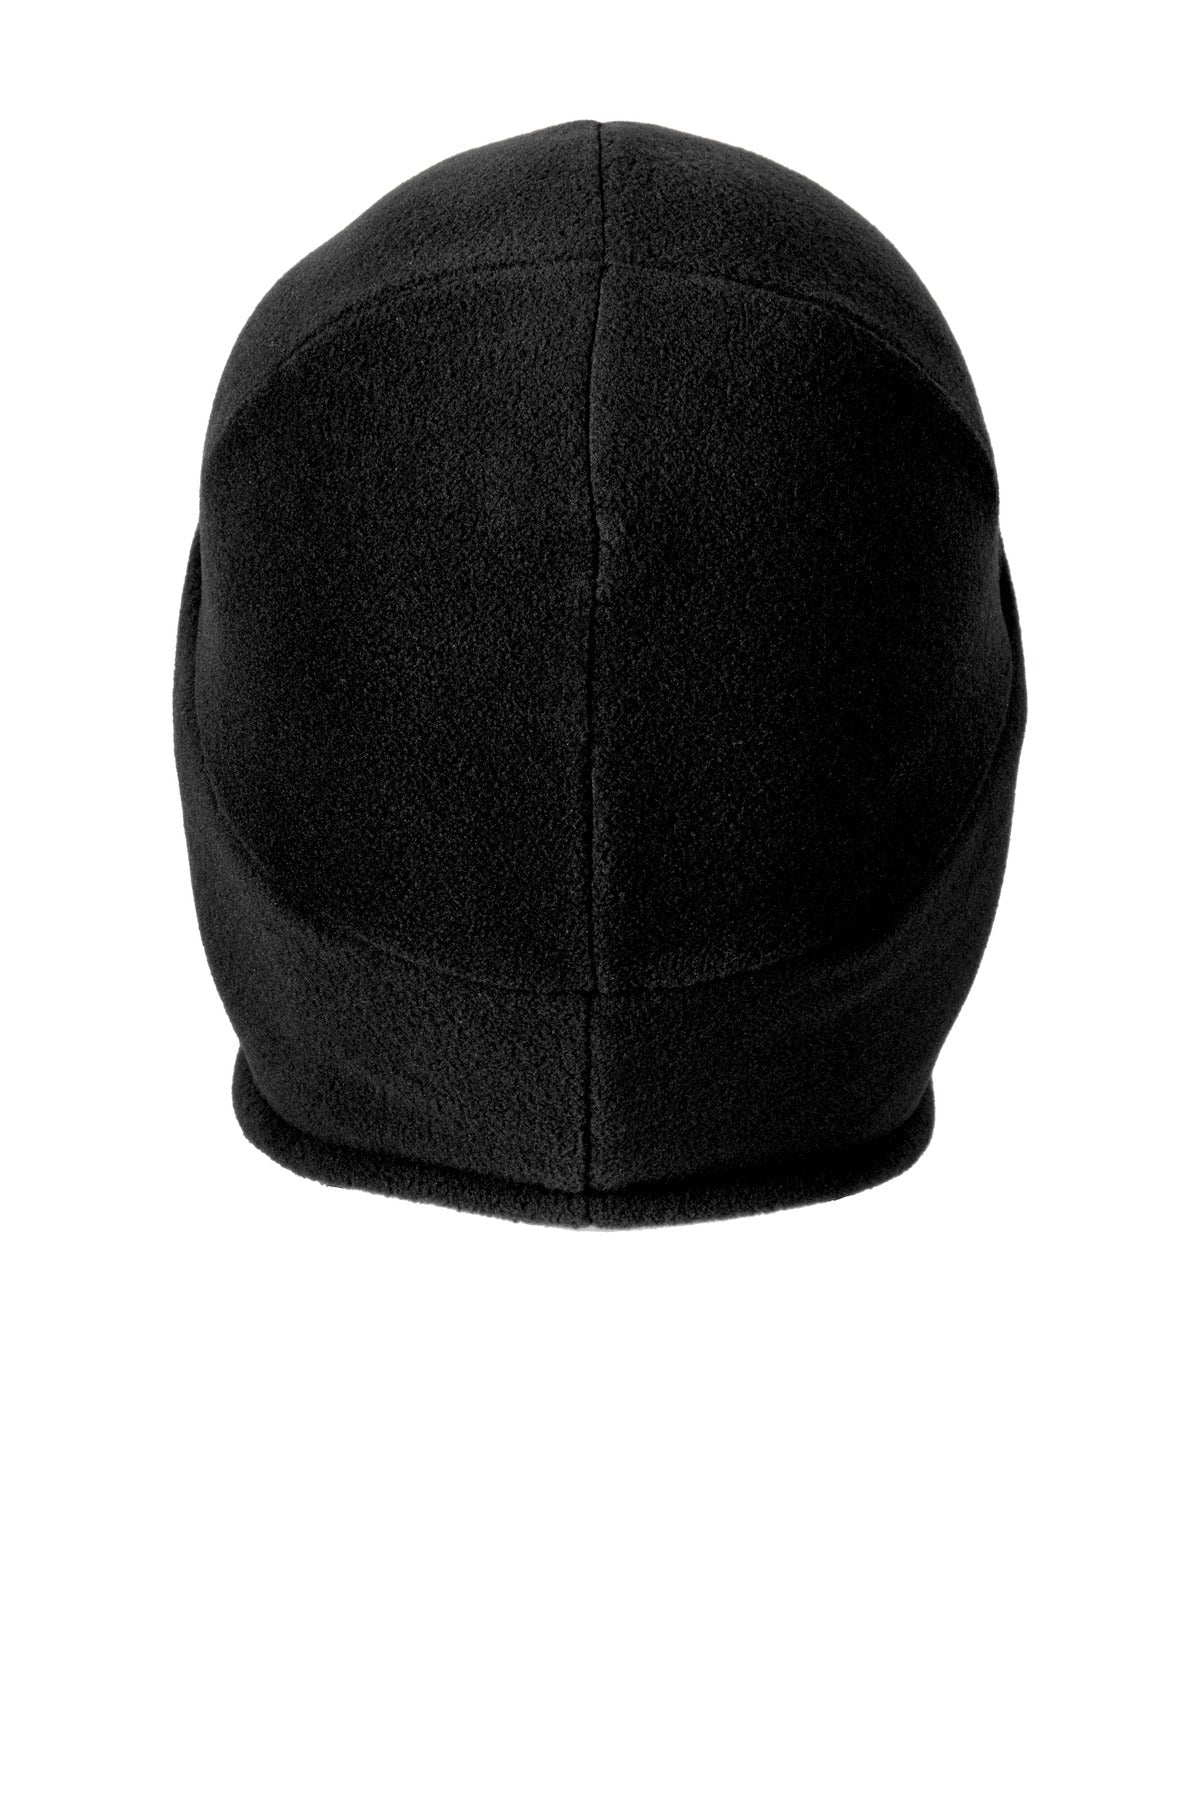 Carhartt Black Fleece Hat